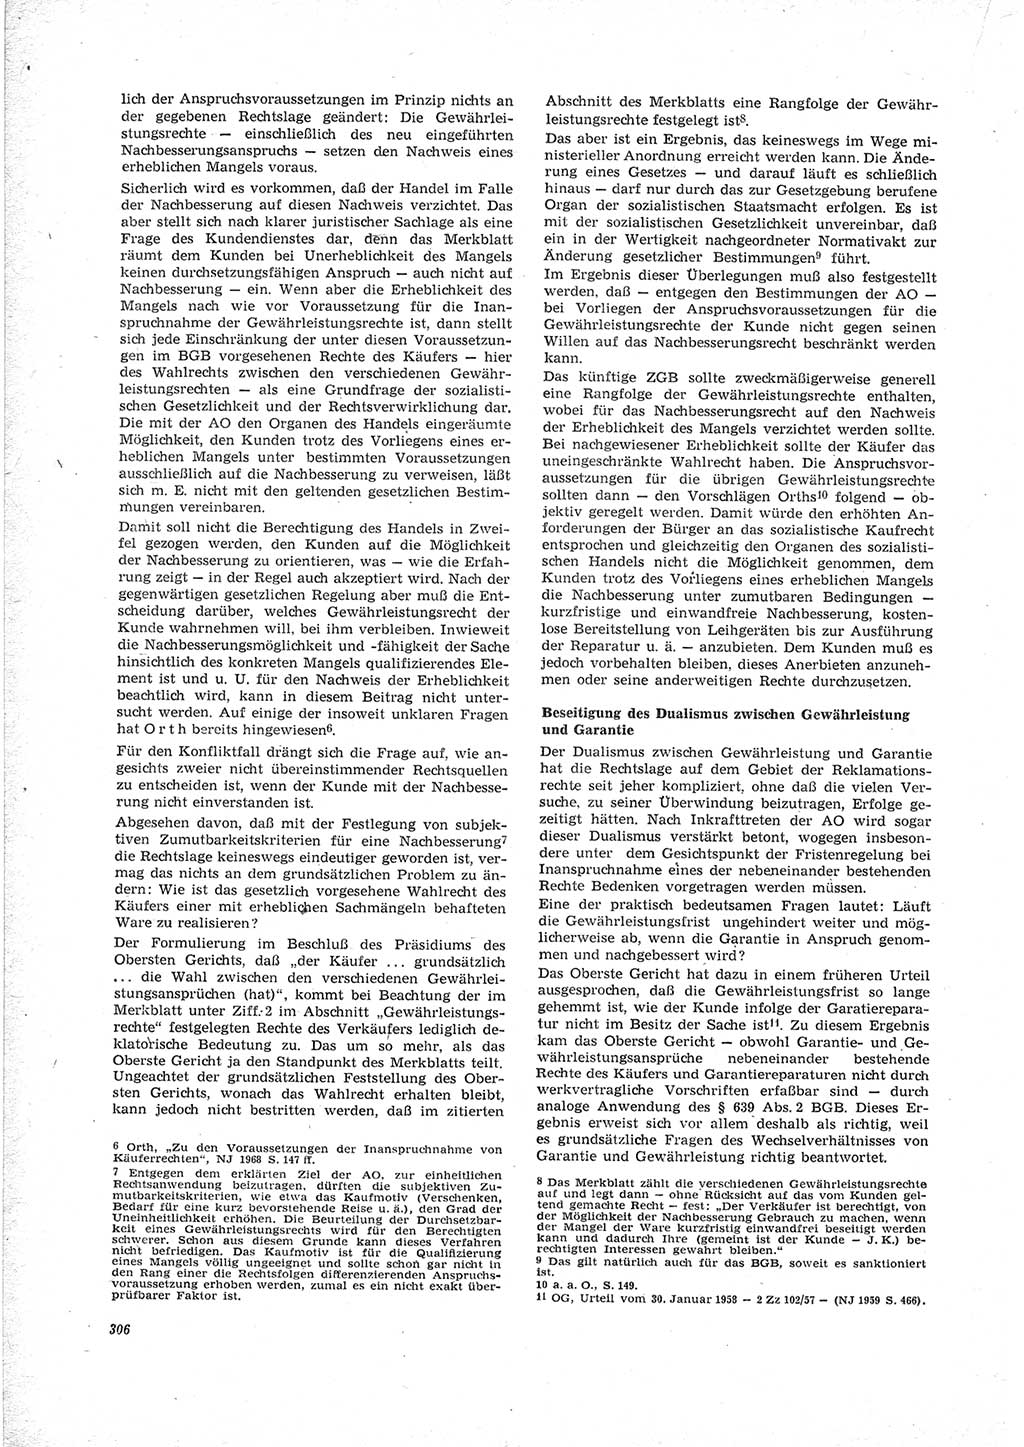 Neue Justiz (NJ), Zeitschrift für Recht und Rechtswissenschaft [Deutsche Demokratische Republik (DDR)], 23. Jahrgang 1969, Seite 306 (NJ DDR 1969, S. 306)